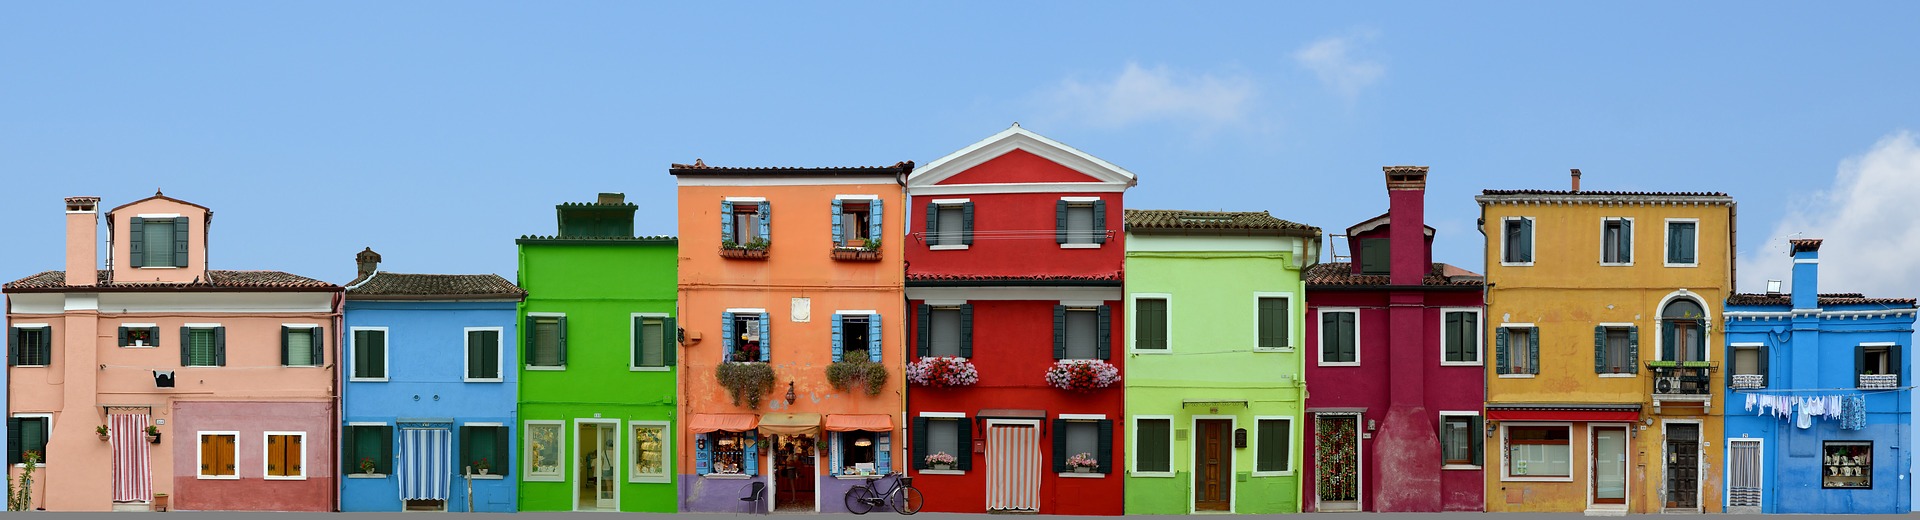 Colorful House Facades